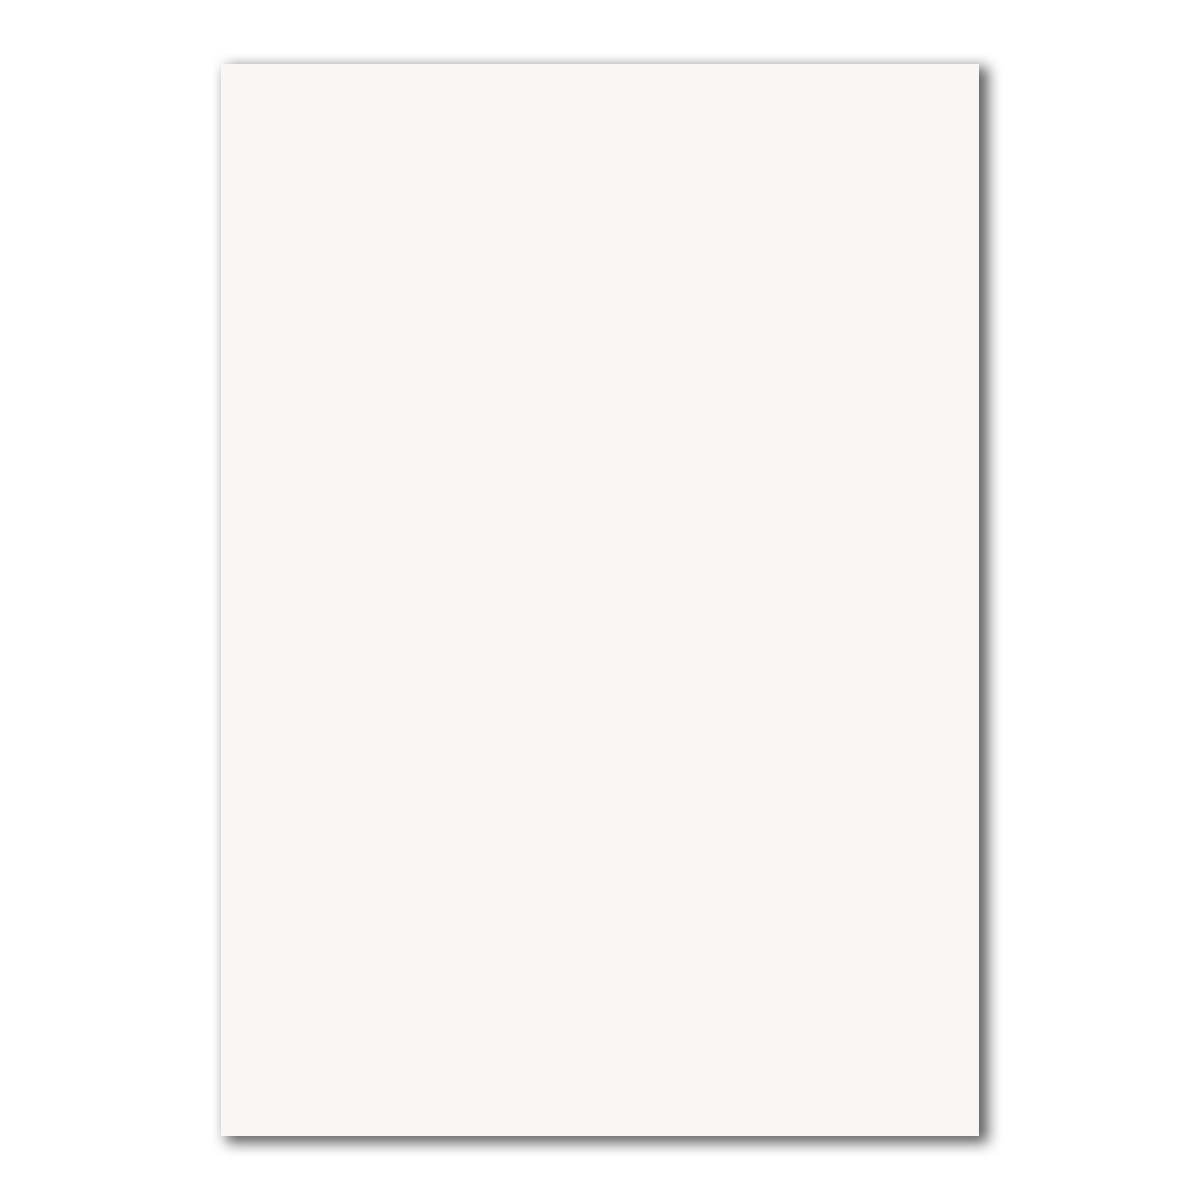 200 DIN A4 Papier-bögen Planobogen - Hochweiß (Weiß) - 240 g/m² - 21 x 29,7 cm - Bastelbogen Ton-Papier Fotokarton Bastel-Papier Ton-Karton - FarbenFroh